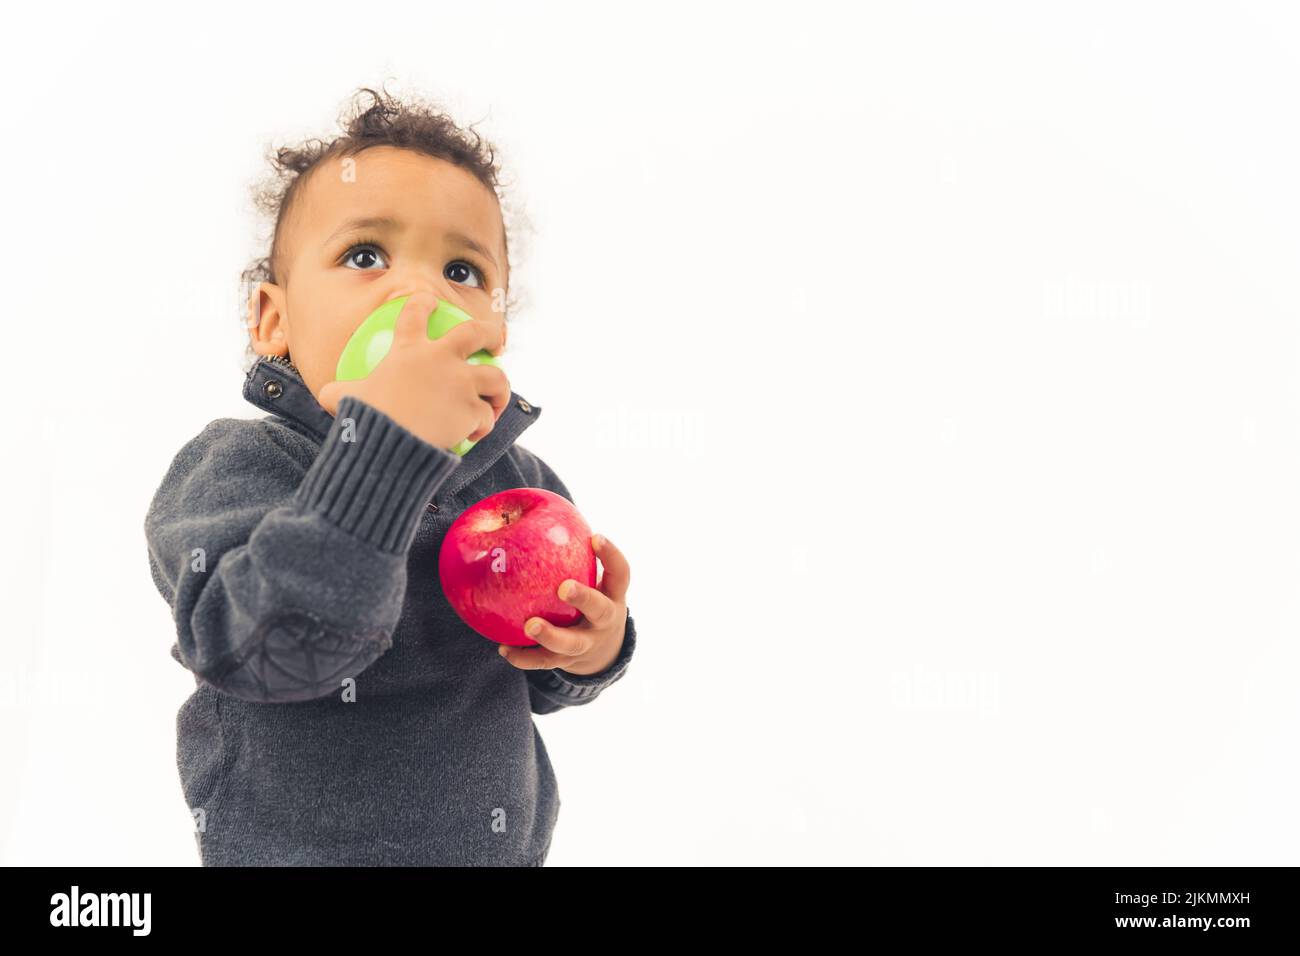 Piccolo afroamericano maschio ragazzo mangiare una mela con la mano destra e tenere un'altra mela con un'altra - closeup isolato. Foto di alta qualità Foto Stock